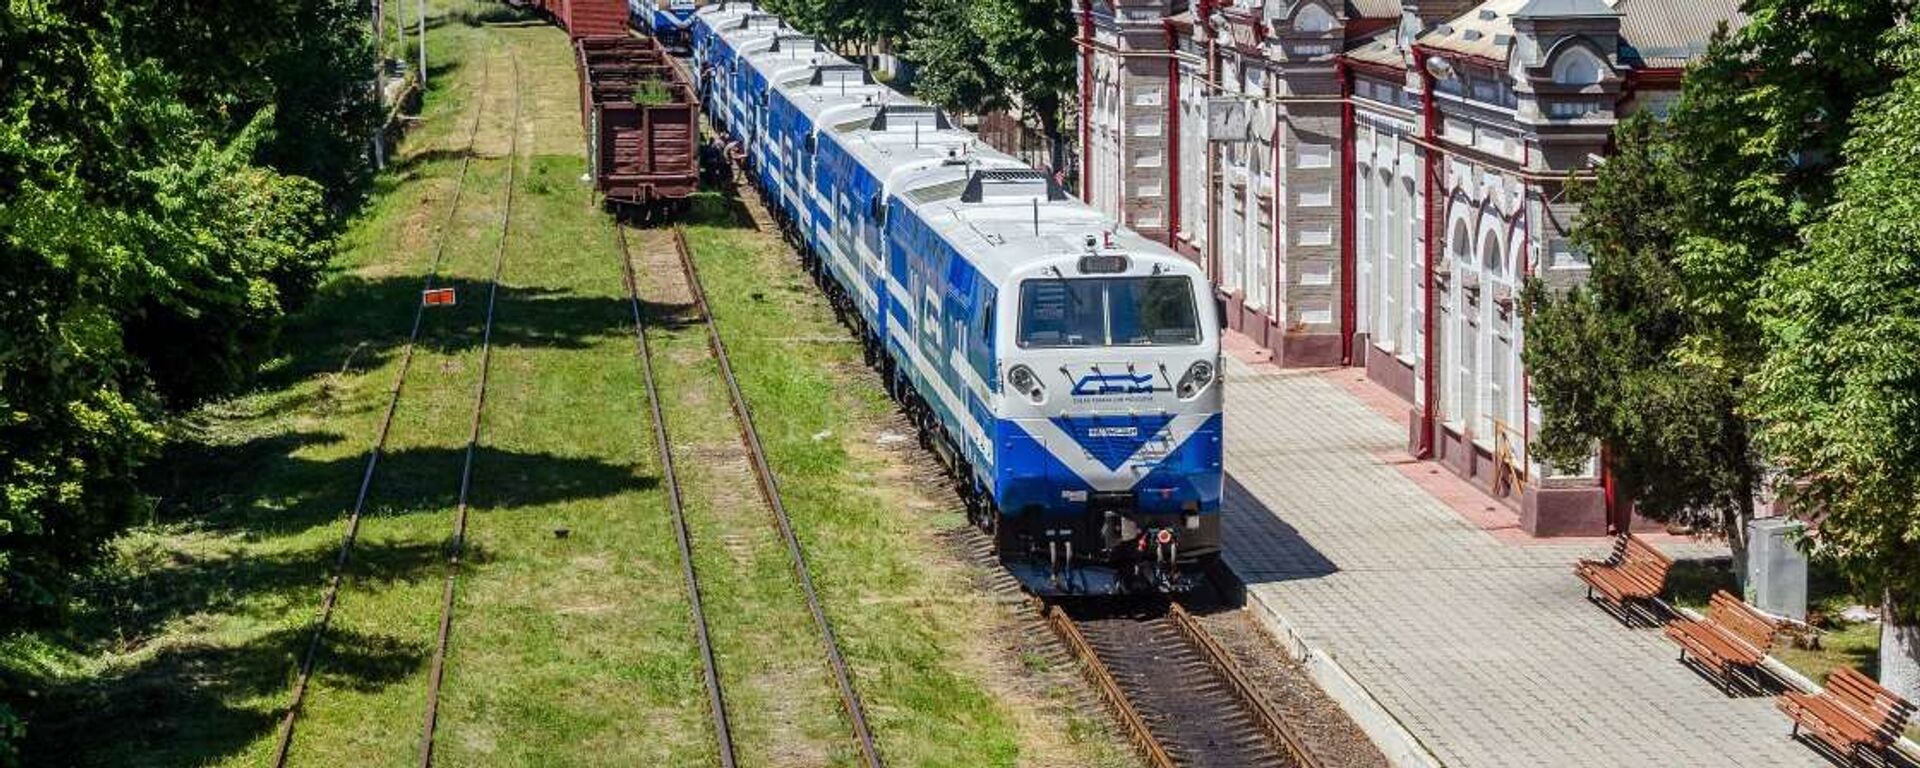 Железная дорога Молдовы получила 6 новых локомотивов - Sputnik Молдова, 1920, 10.08.2021